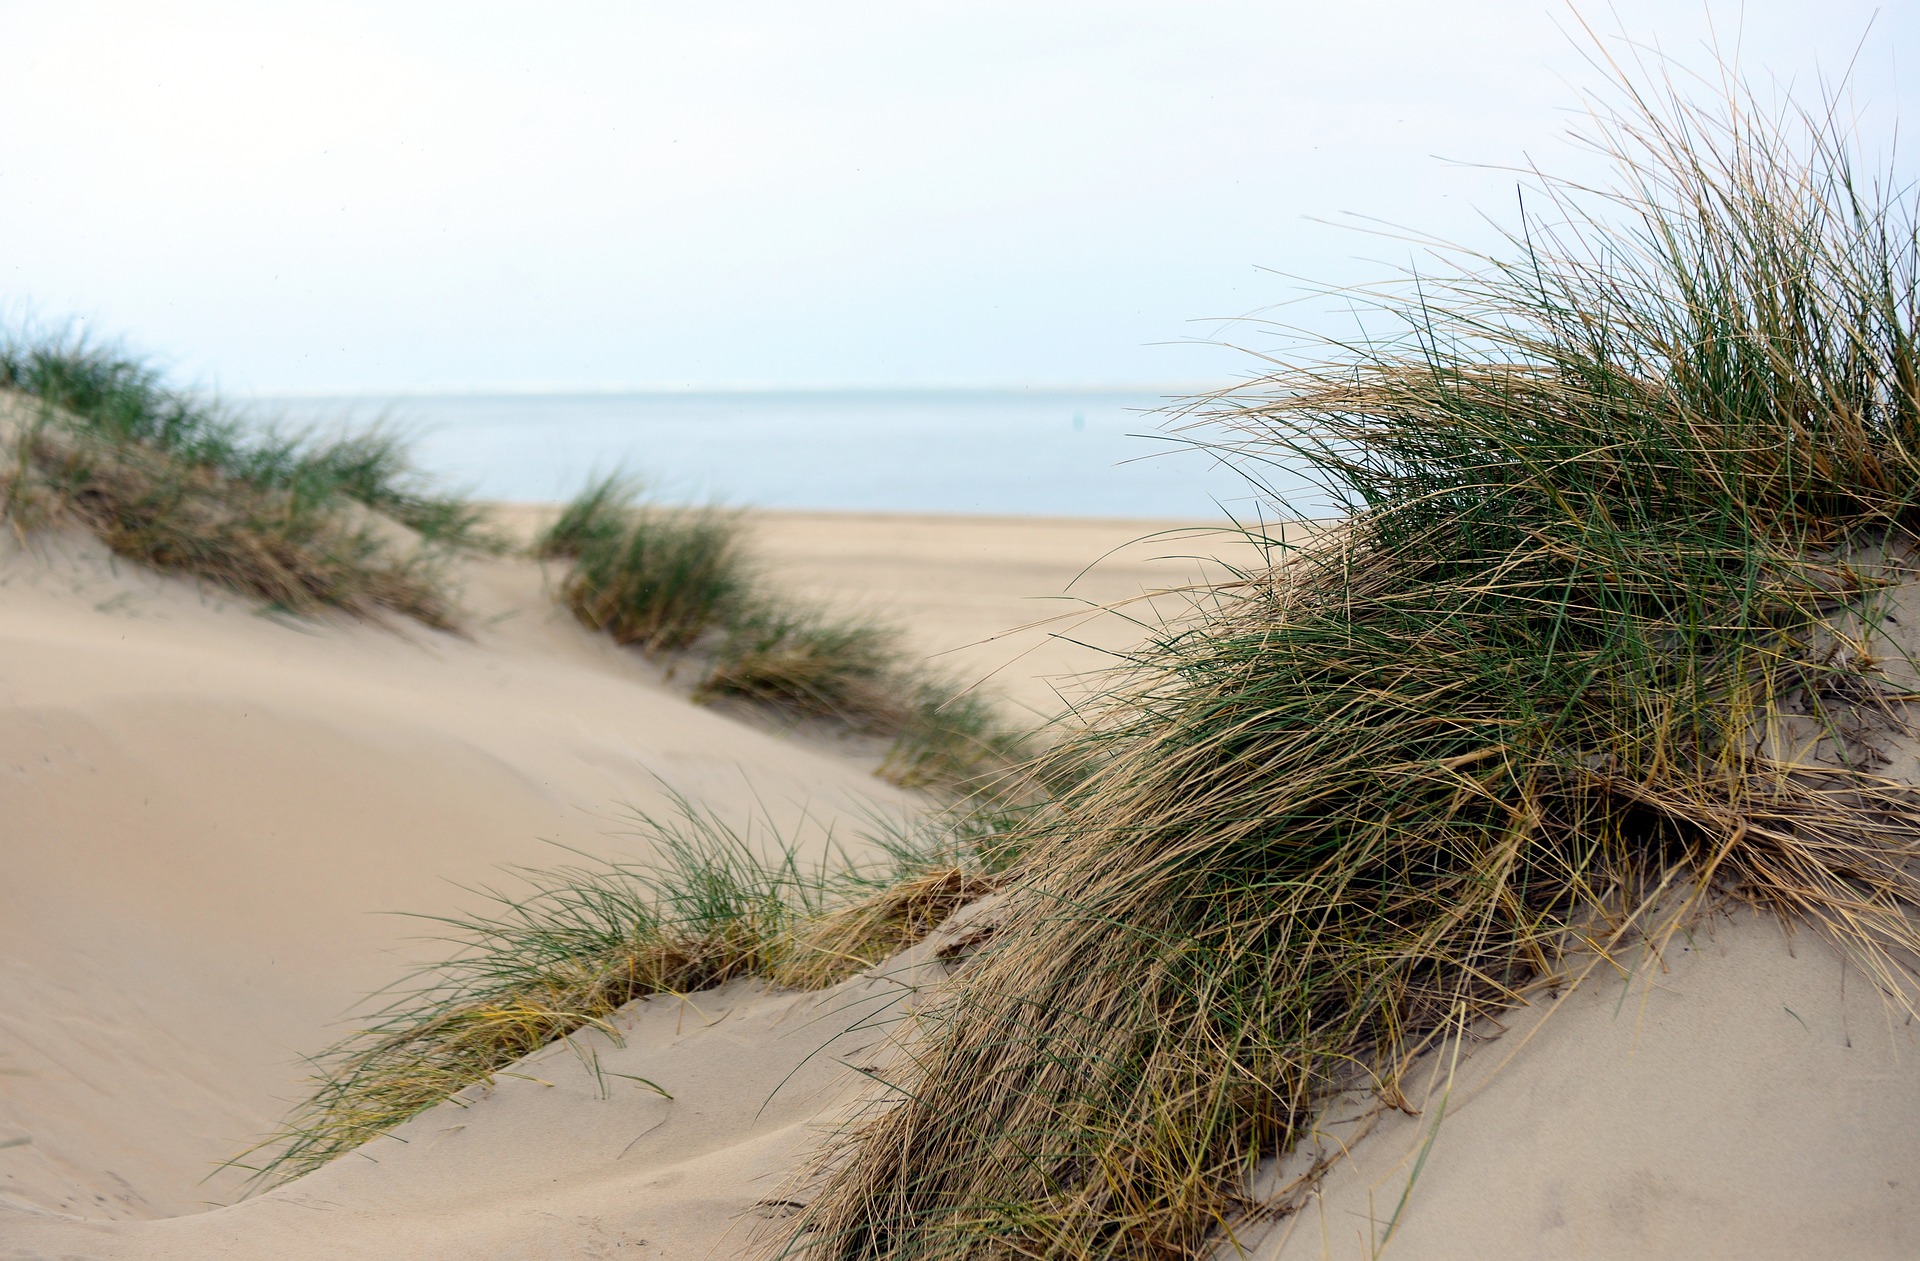 La restauration naturelle des dunes côtières pourrait être une solution efficace pour lutter contre l'érosion du littoral. © congerdesign, Pixabay